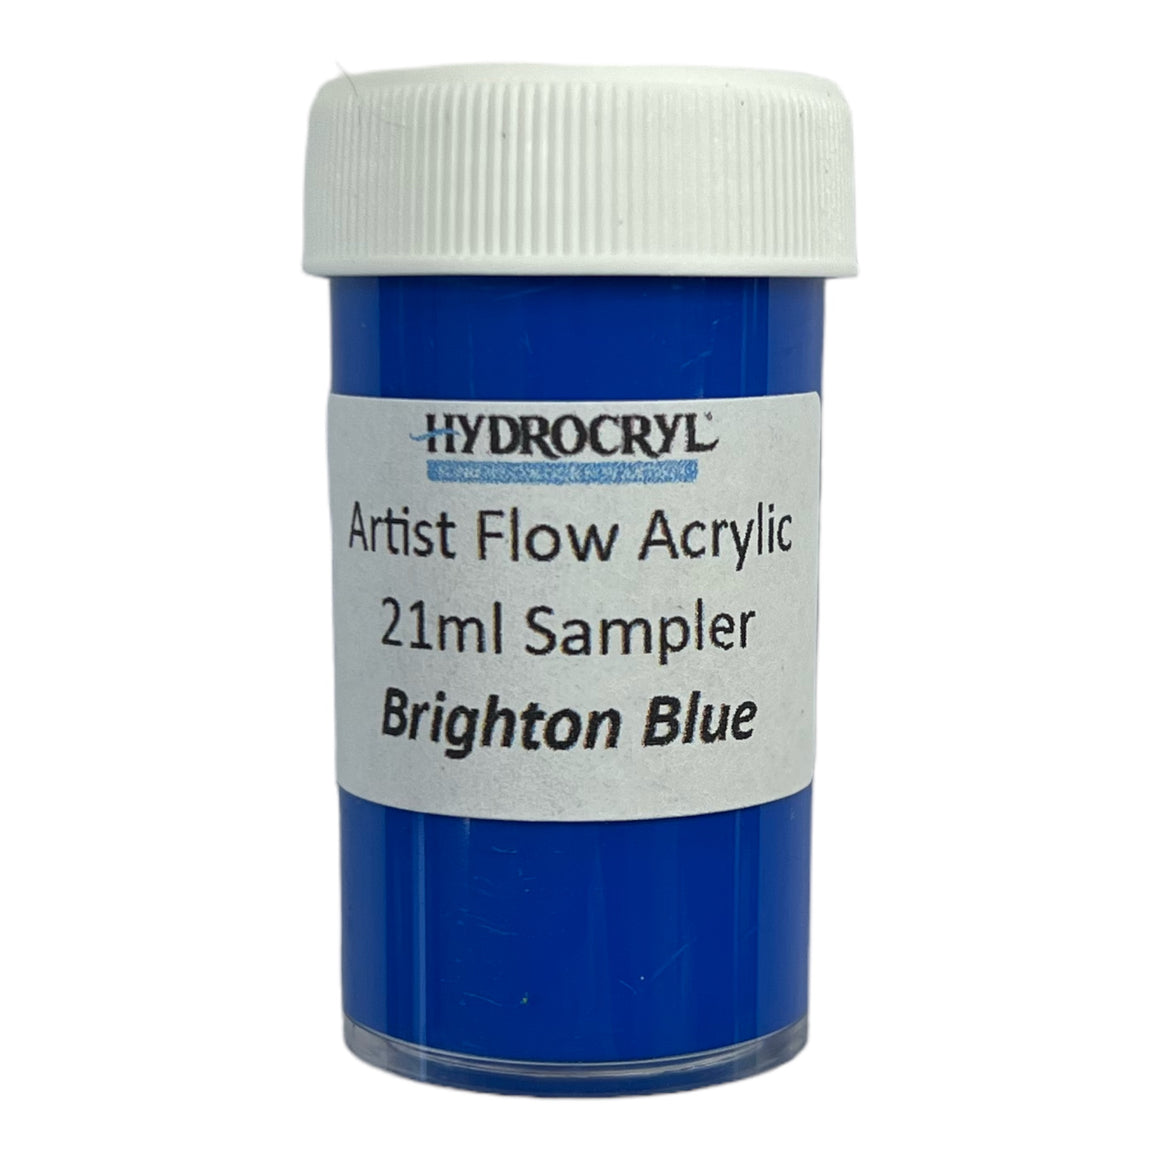 BRIGHTON BLUE Hydrocryl Artist Flow Acrylic 21ml Sampler